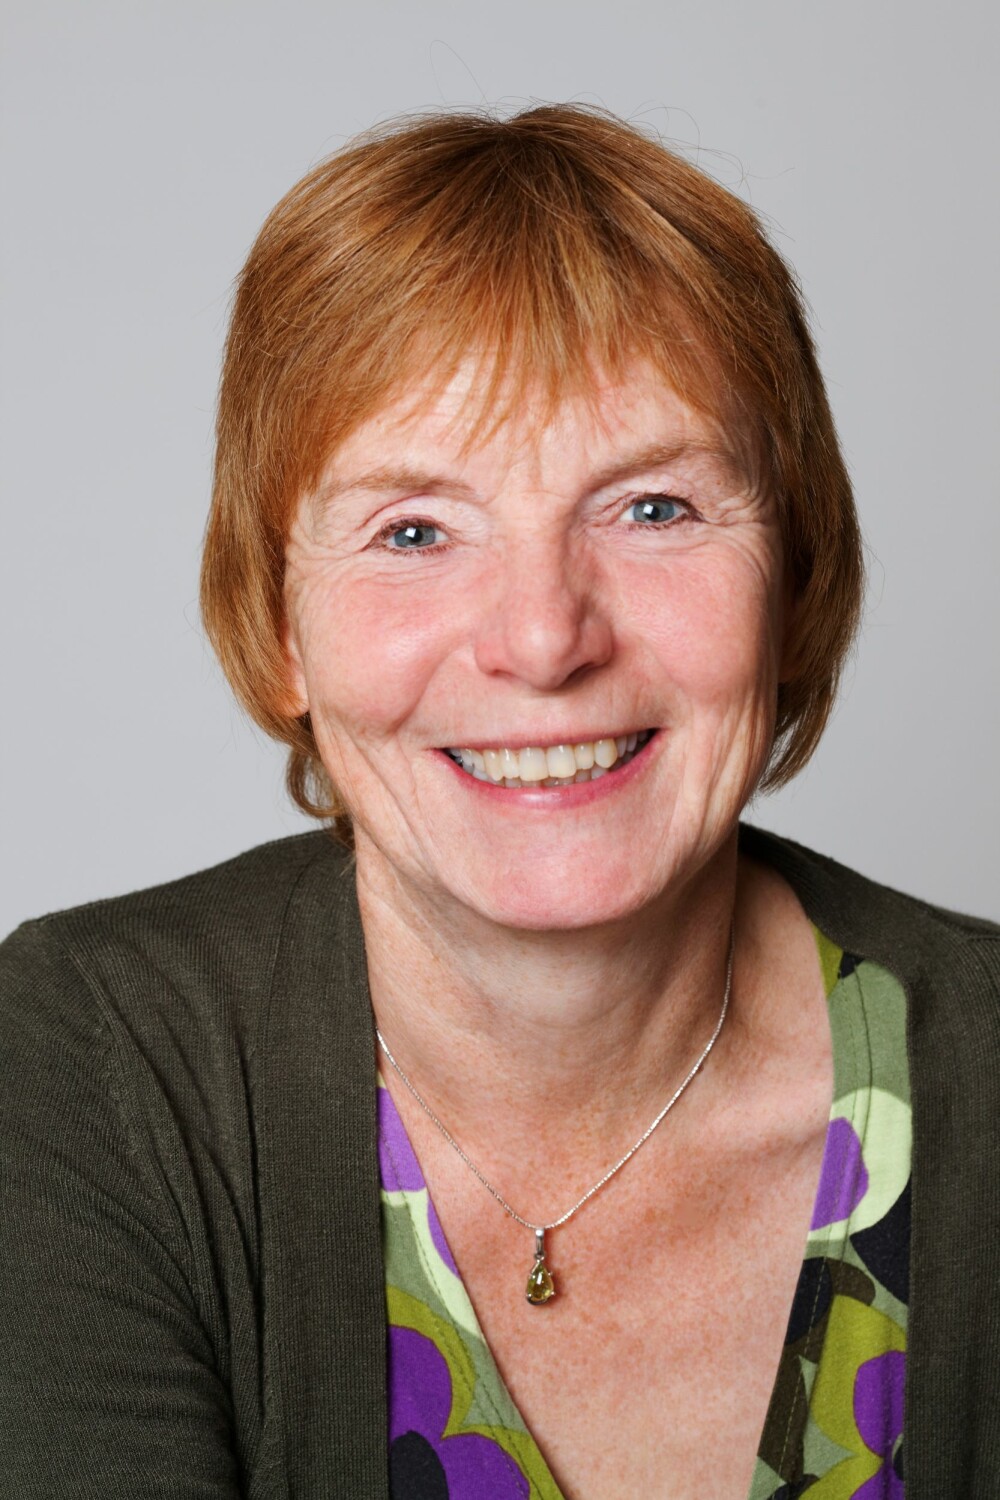 Barnepsykolog og forfatter Elisabeth Gerhardsen. 
Foto: Inger Marie Grini